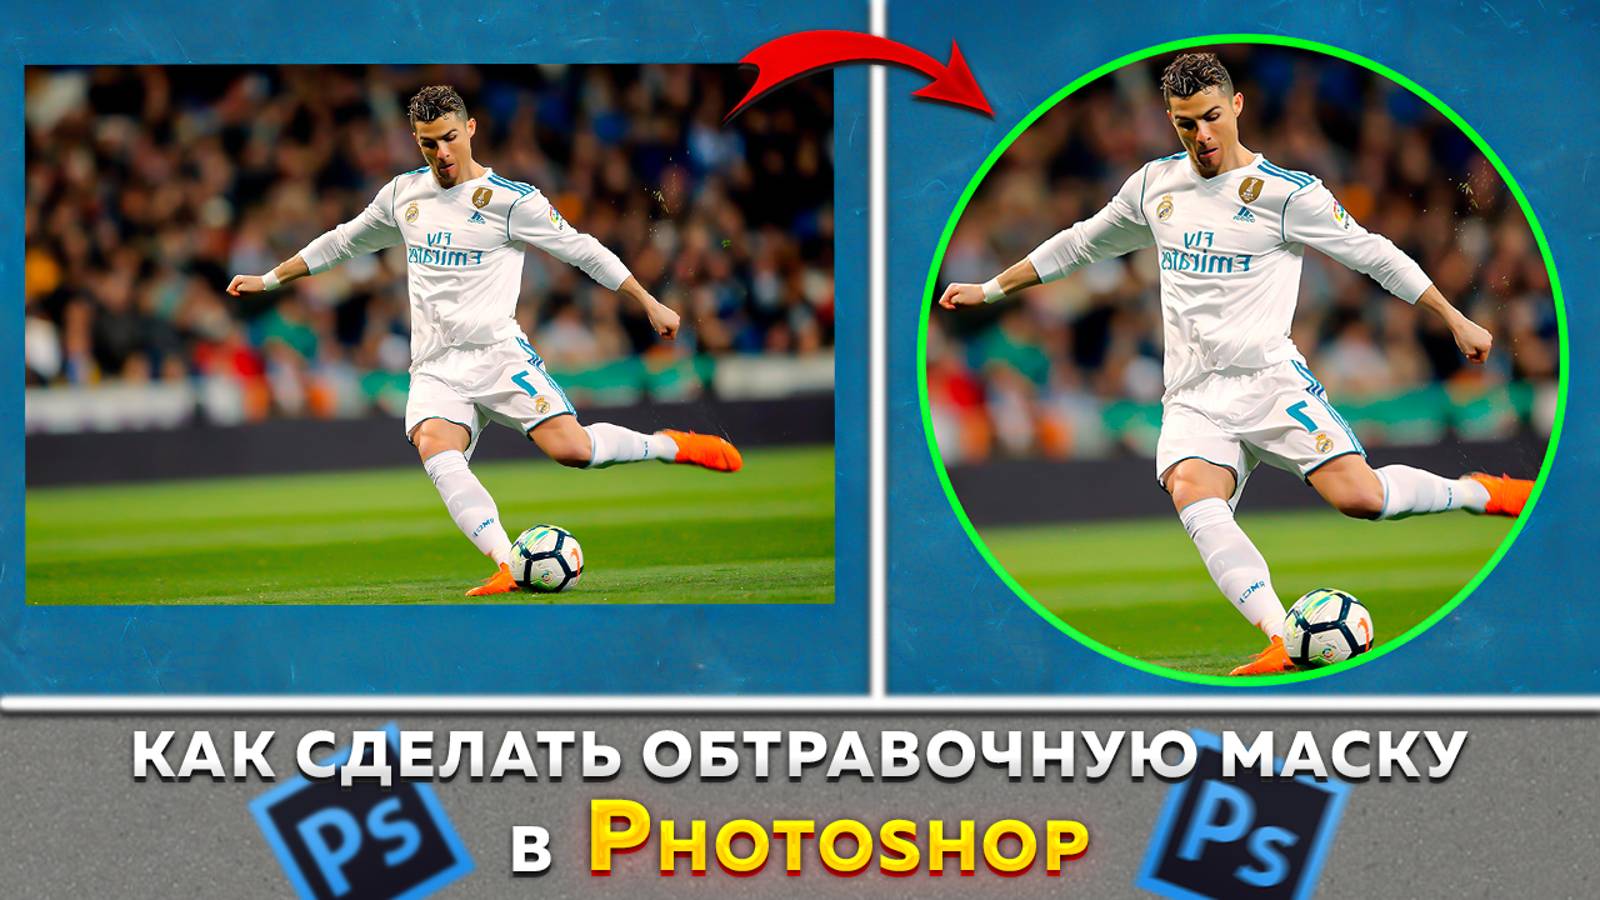 Как сделать картинку круглой в фотошопе Photoshop